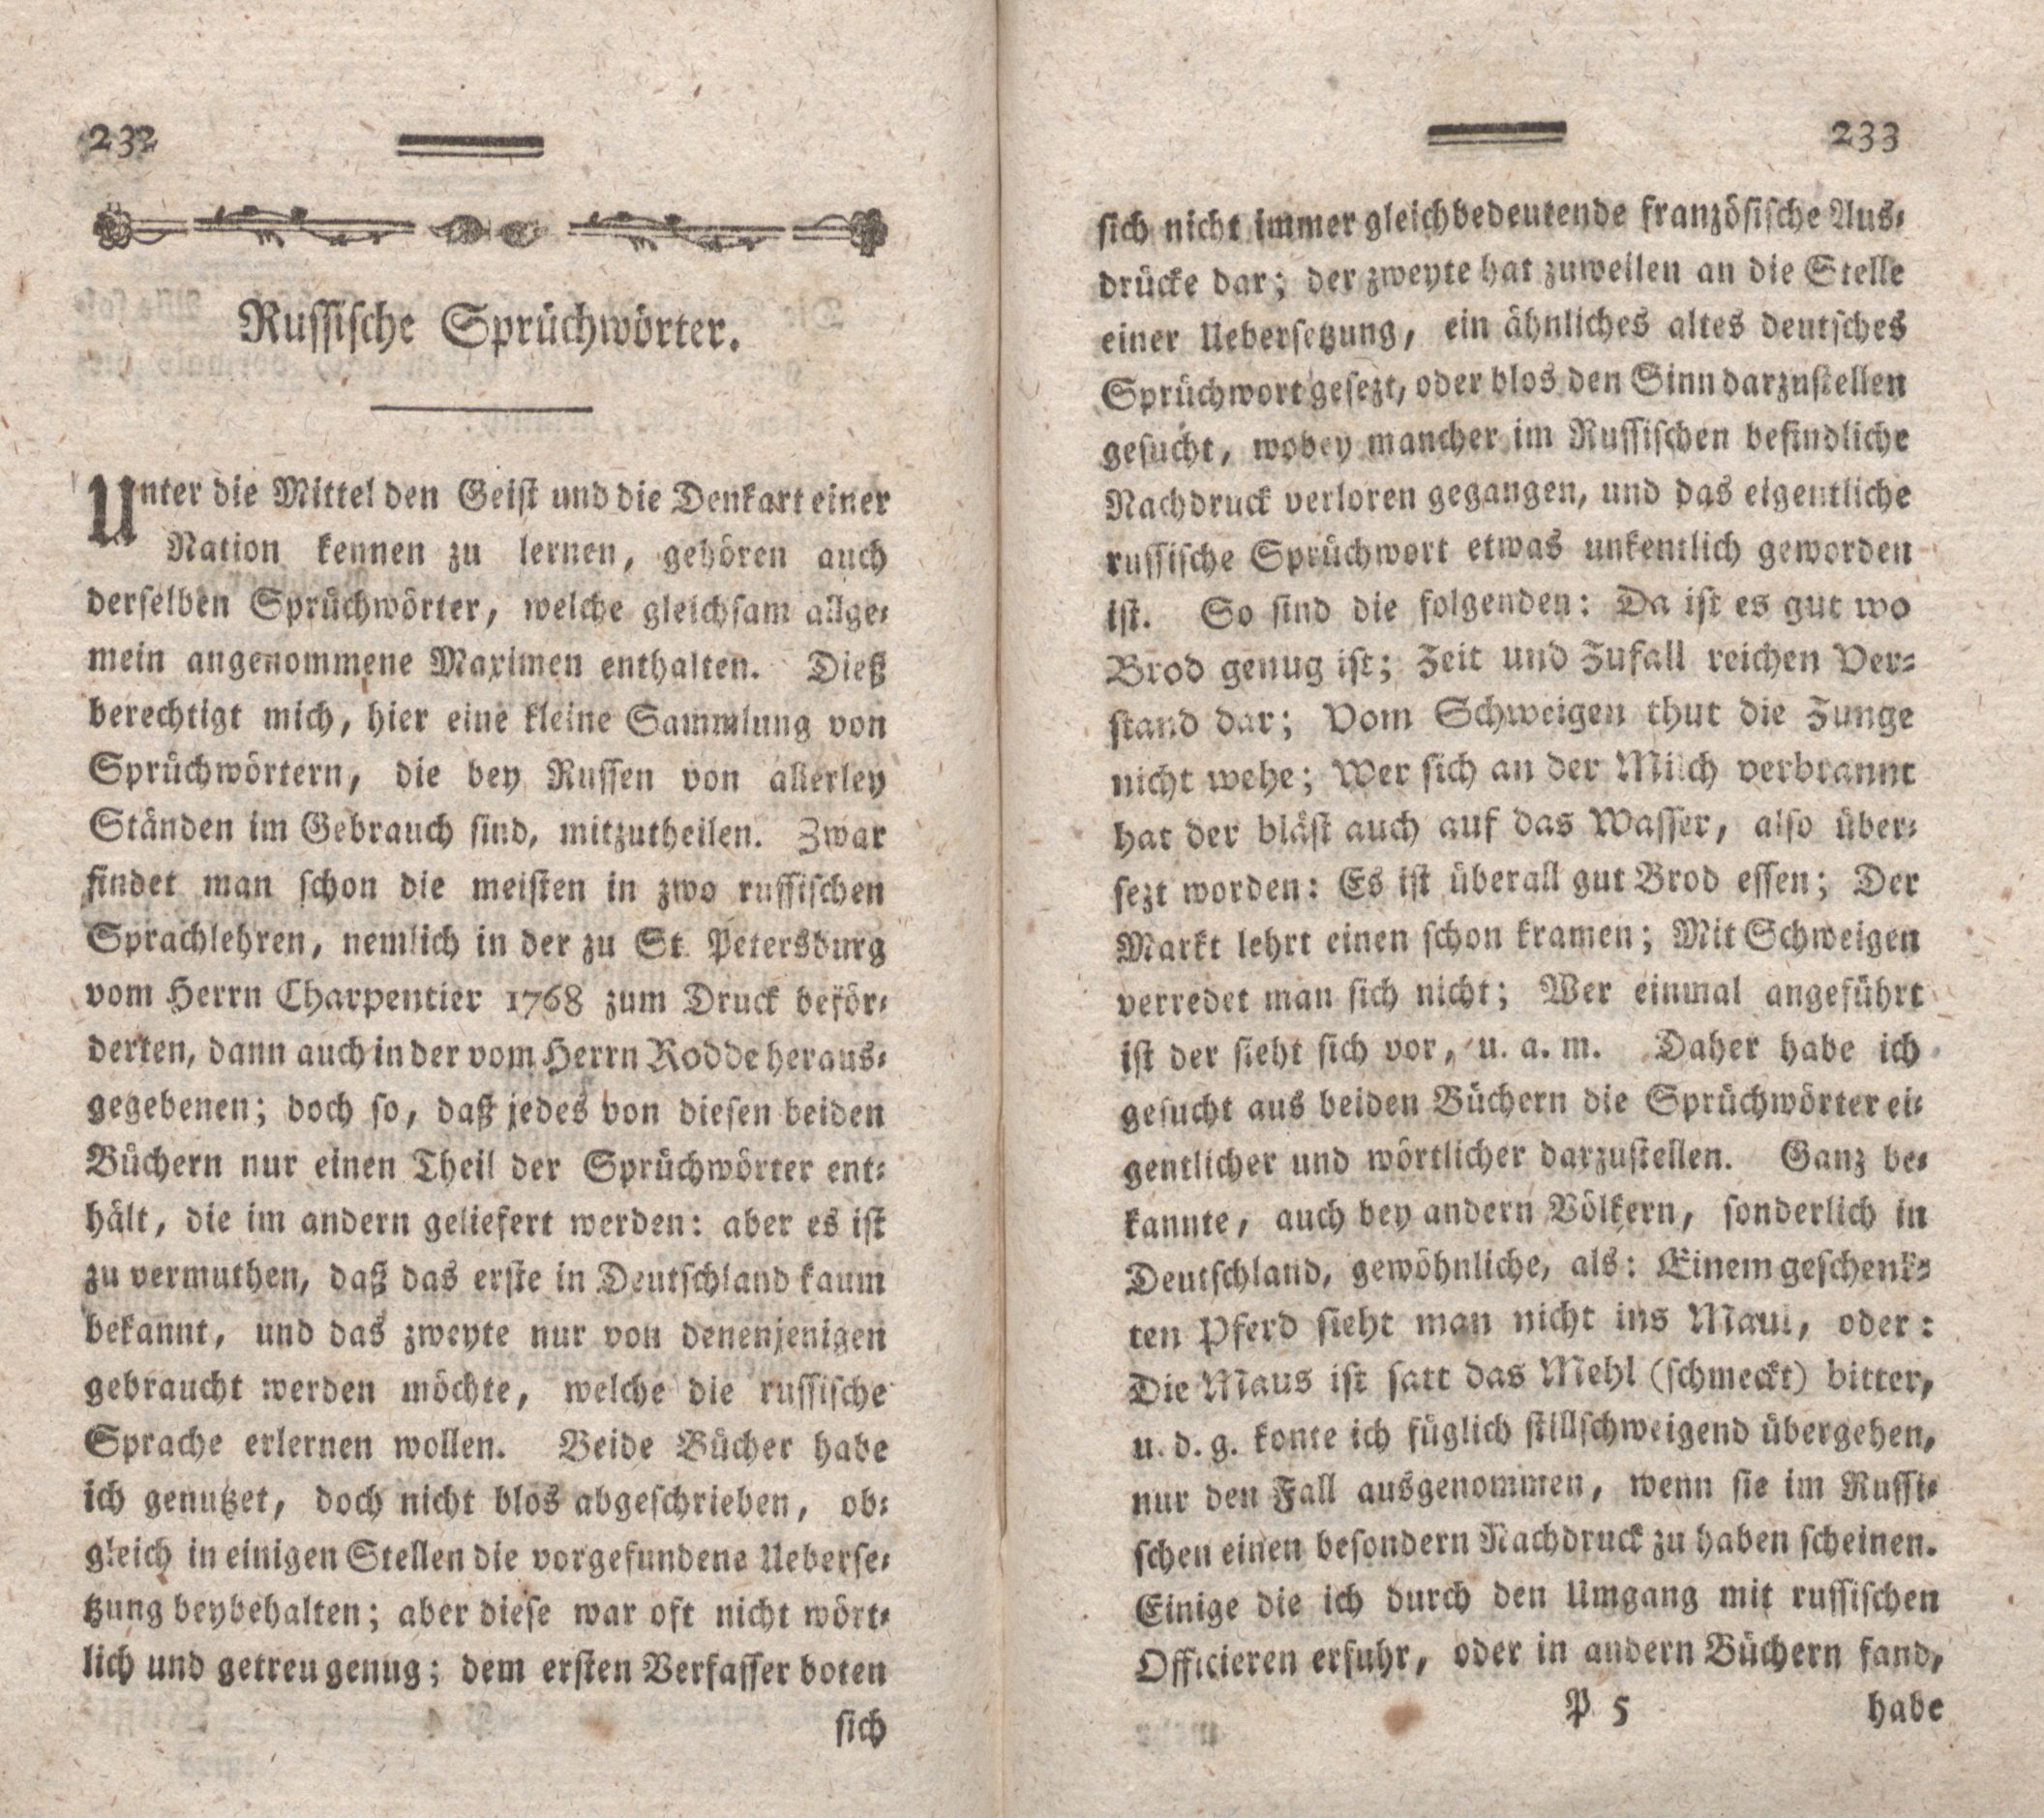 Nordische Miscellaneen [08] (1784) | 117. (232-233) Main body of text